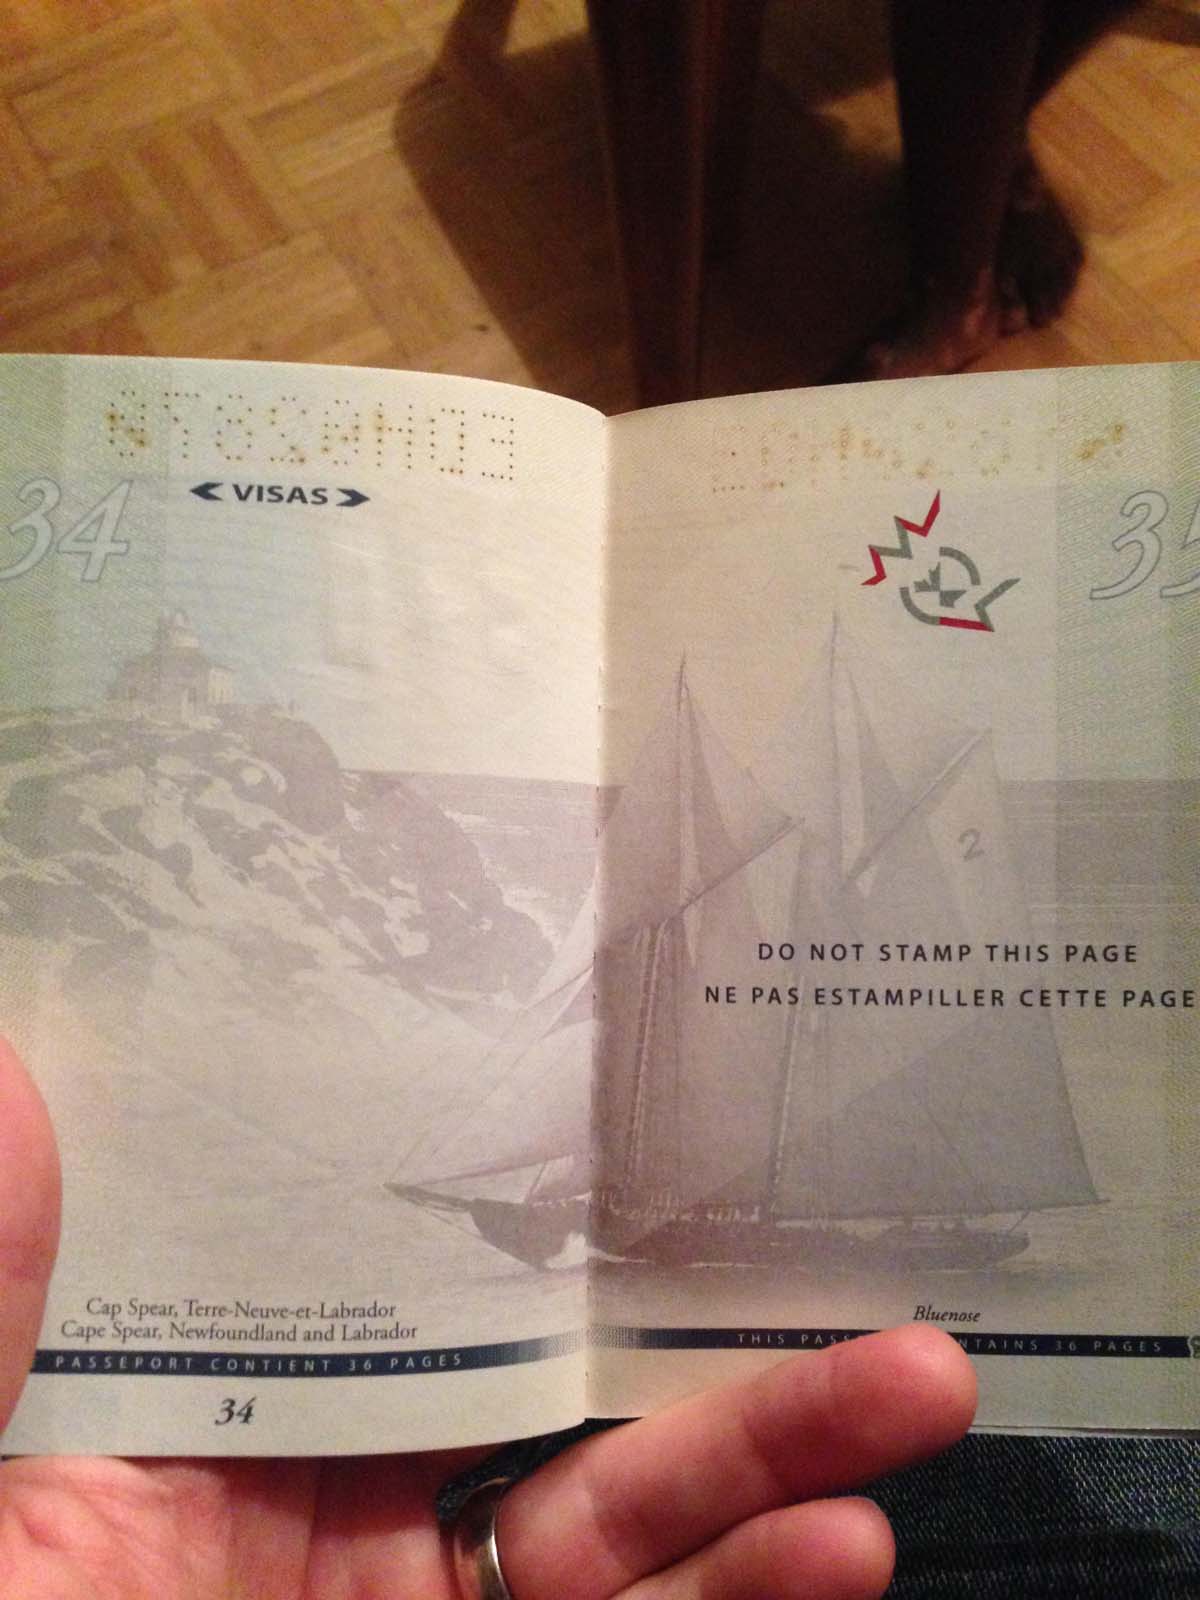 Nouveau passeport canadien 2015 à la lumière normale